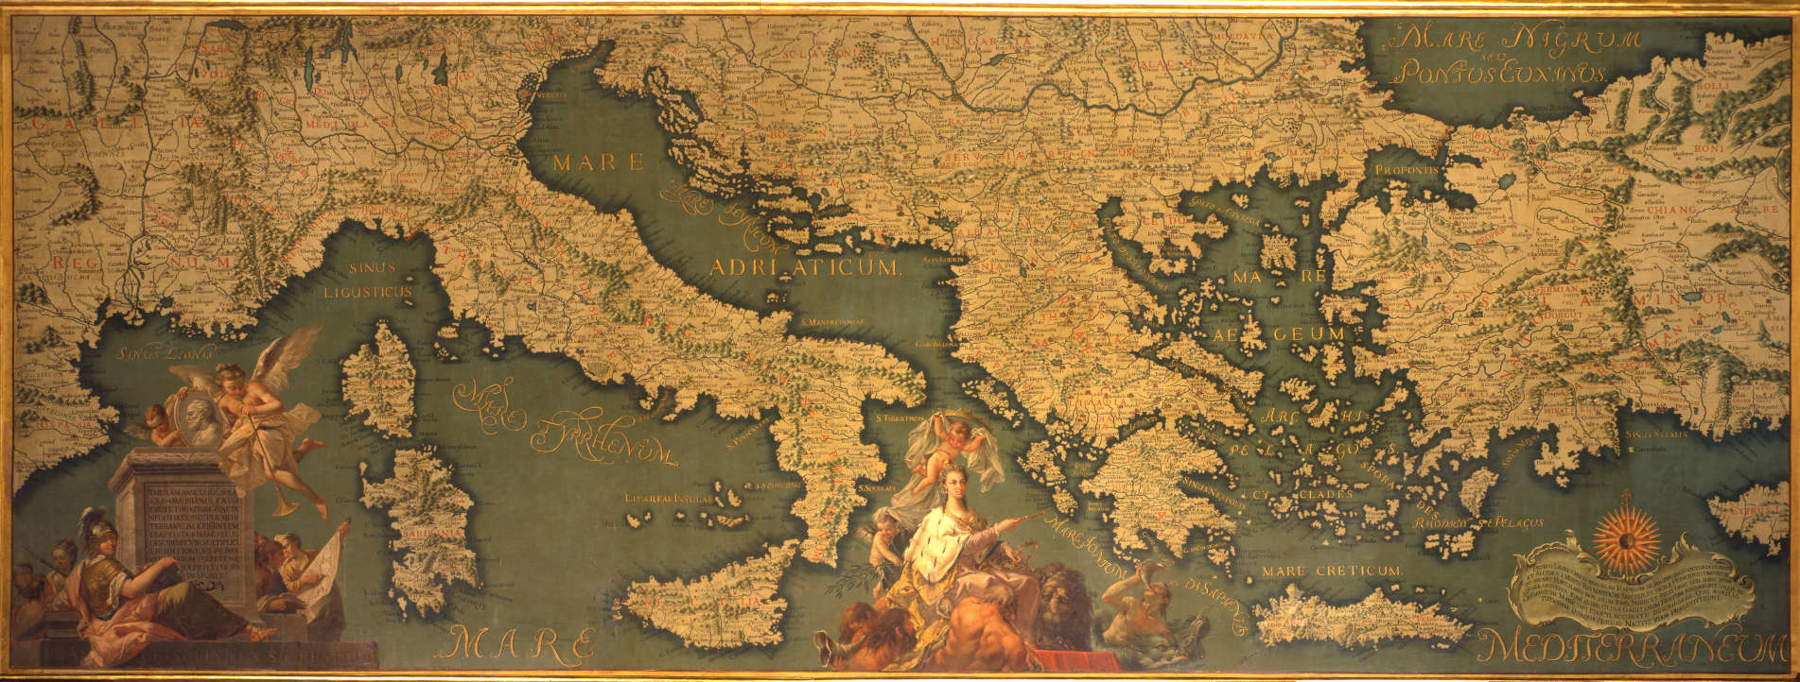 Il 9 gennaio 1324 moriva Marco Polo: a Venezia partono le celebrazioni del settecentenario